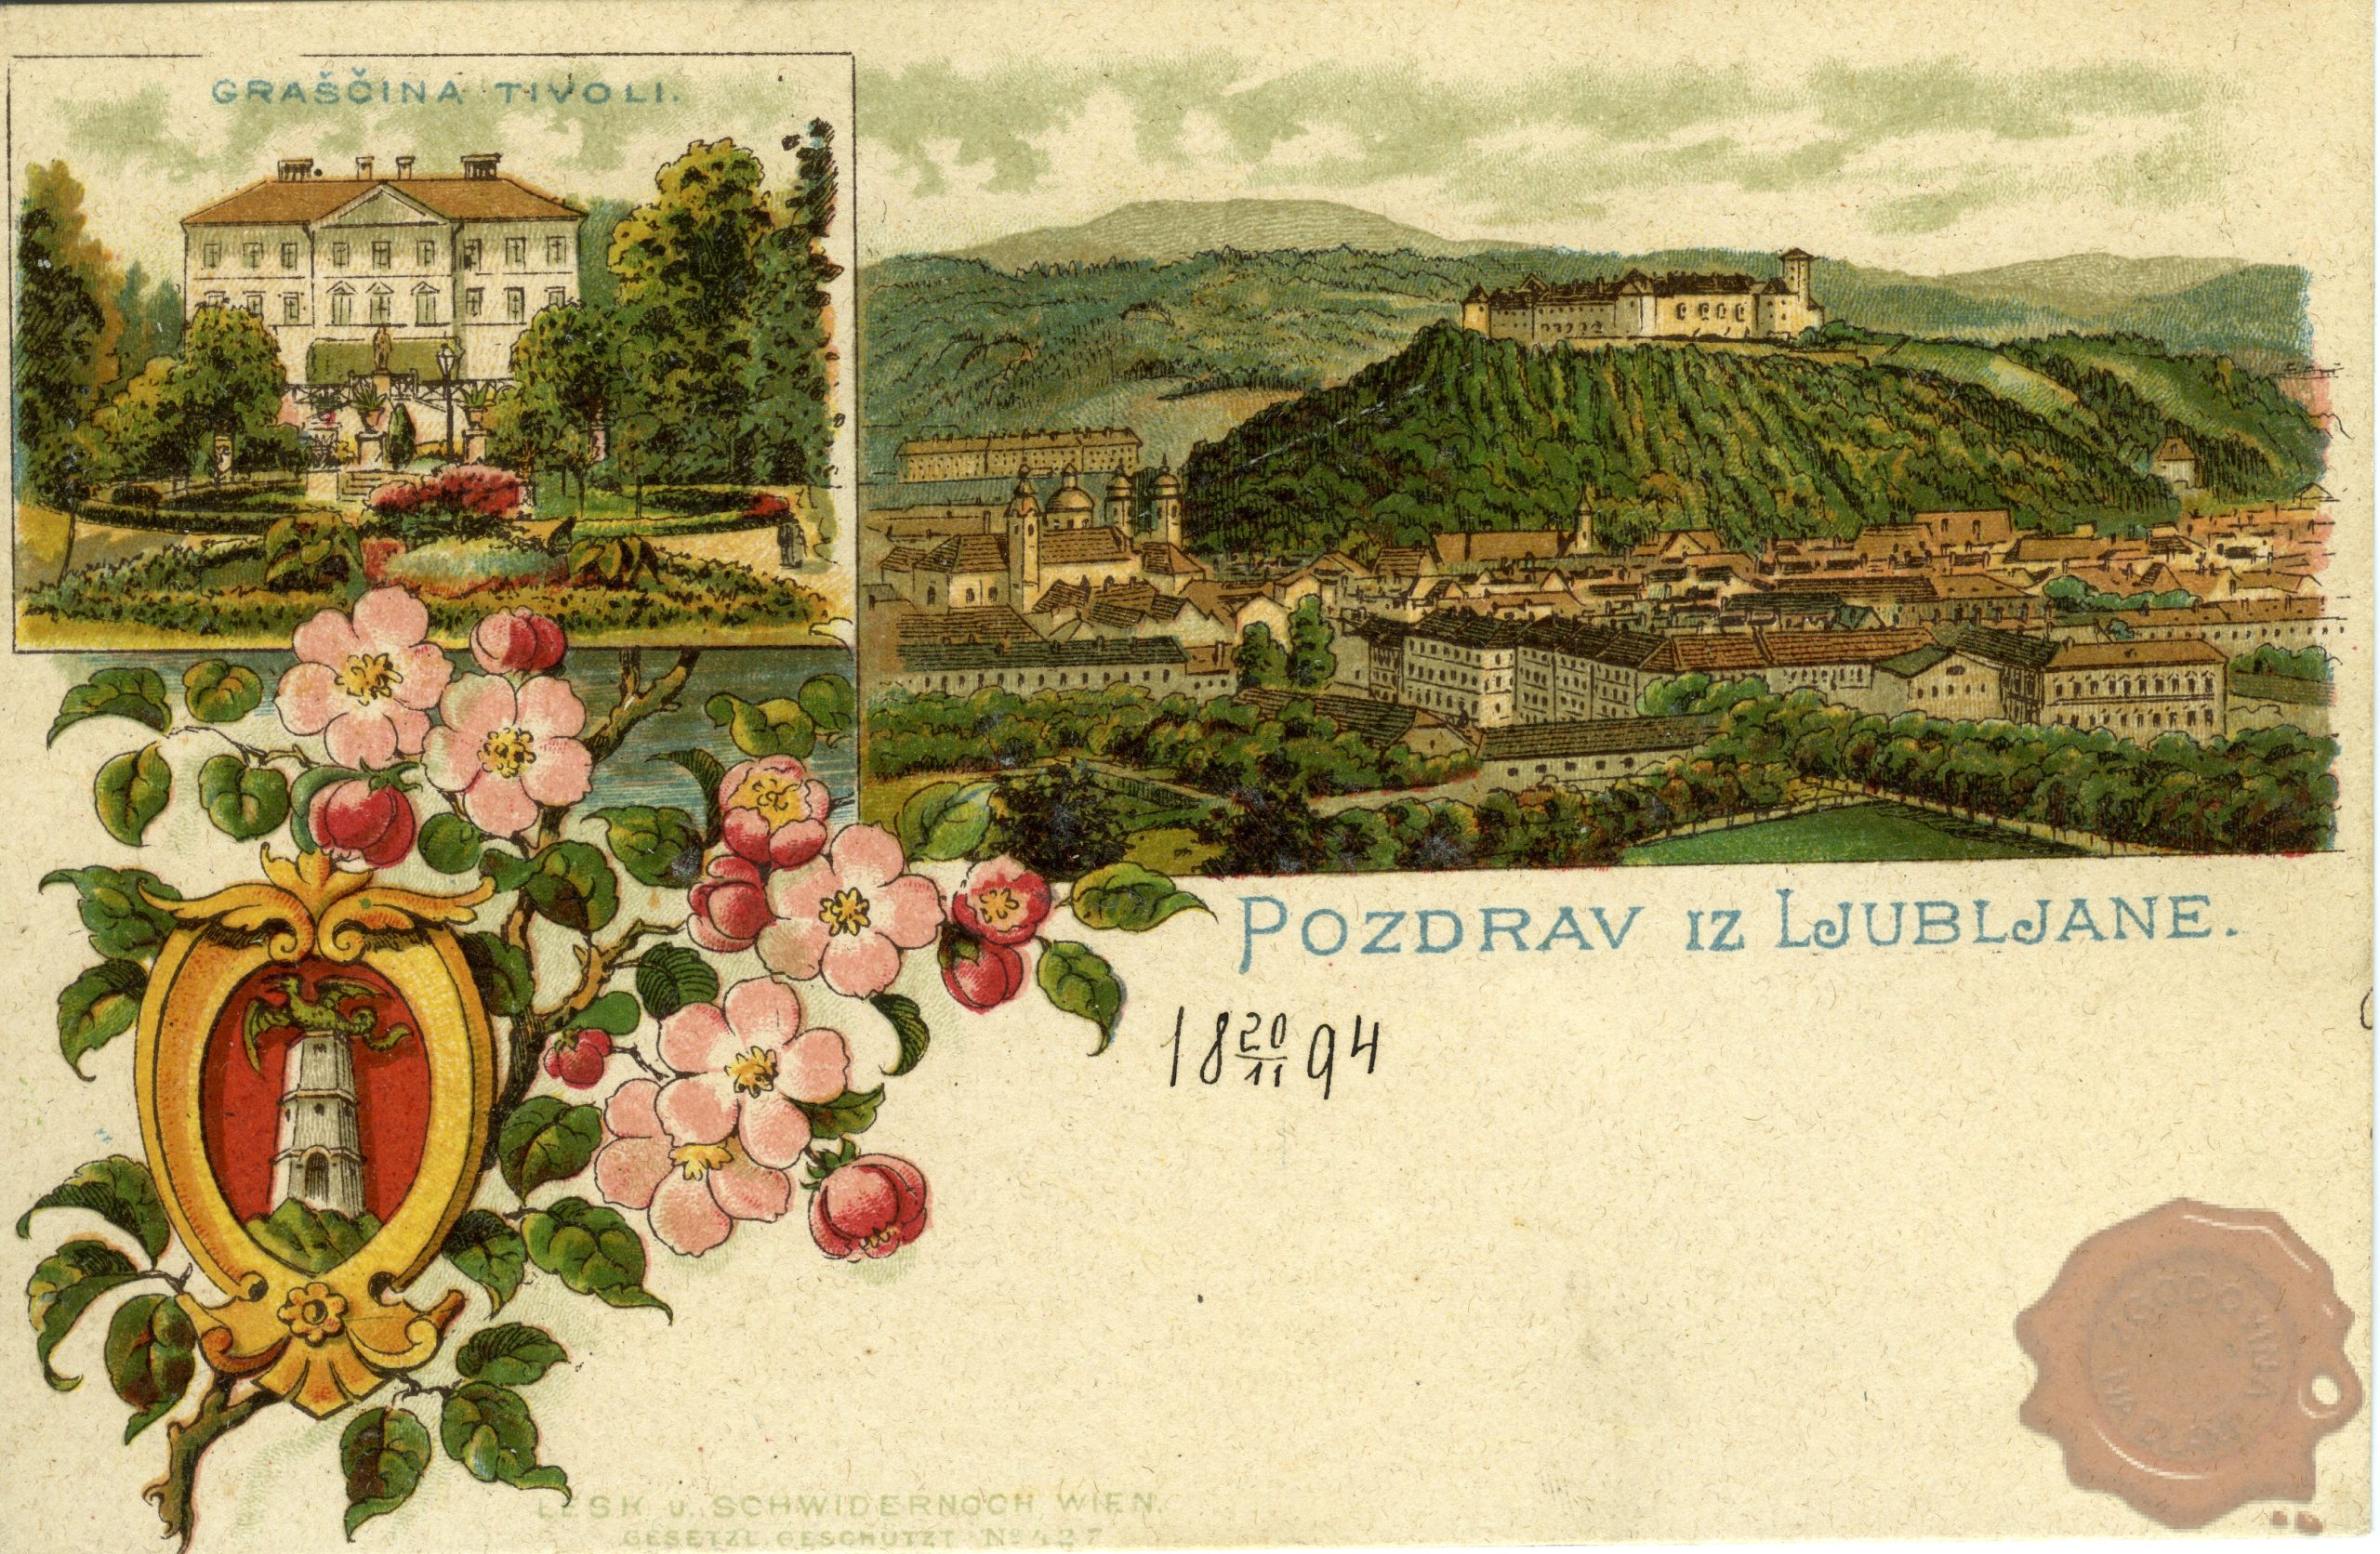 Ljubljana_graščina_Tivoli_grad_1894